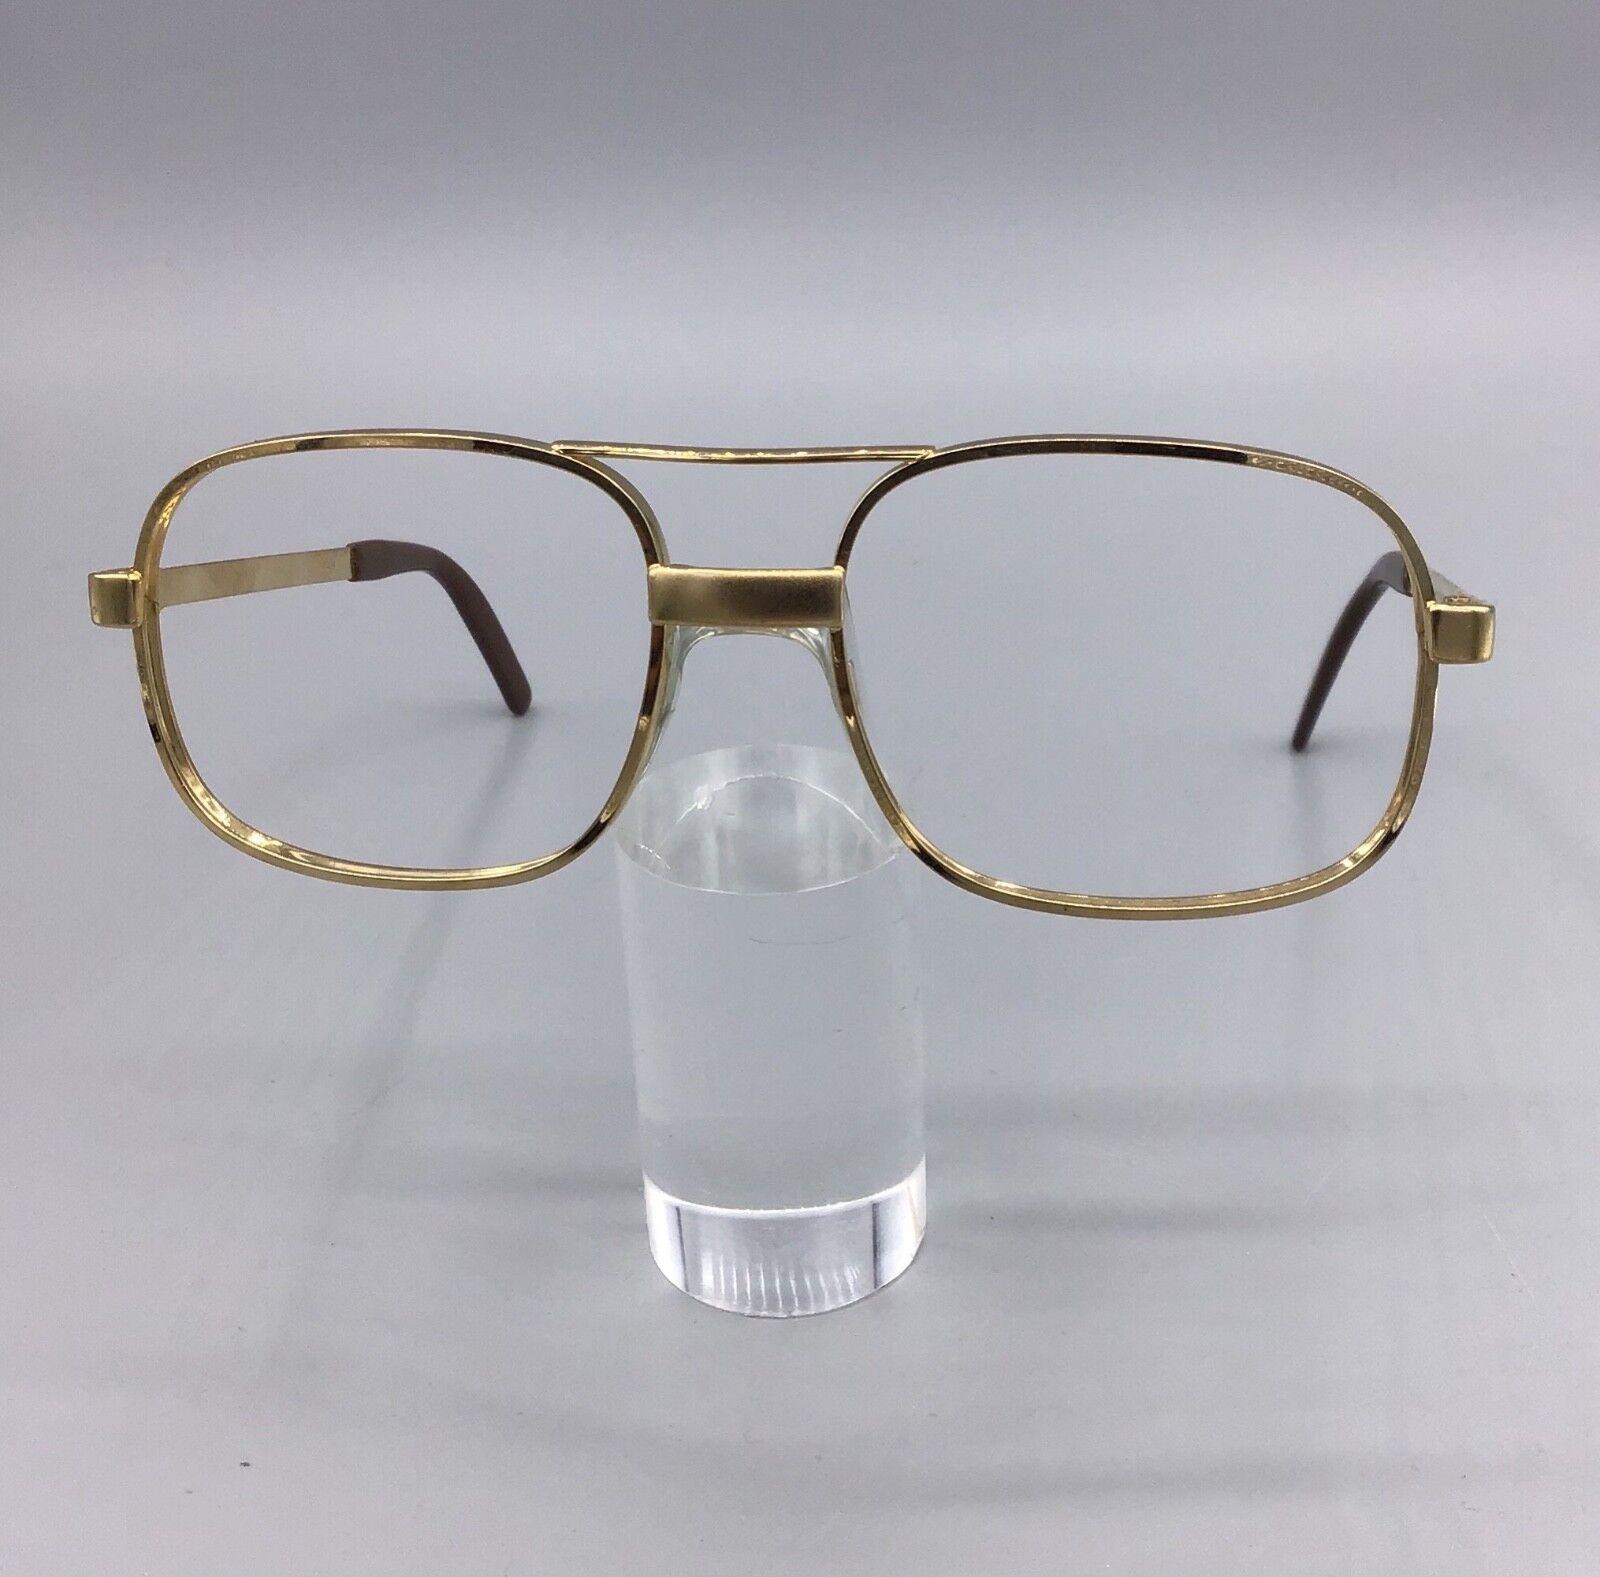 Strahlen occhiale vintage frame Eyewear brillen lunettes